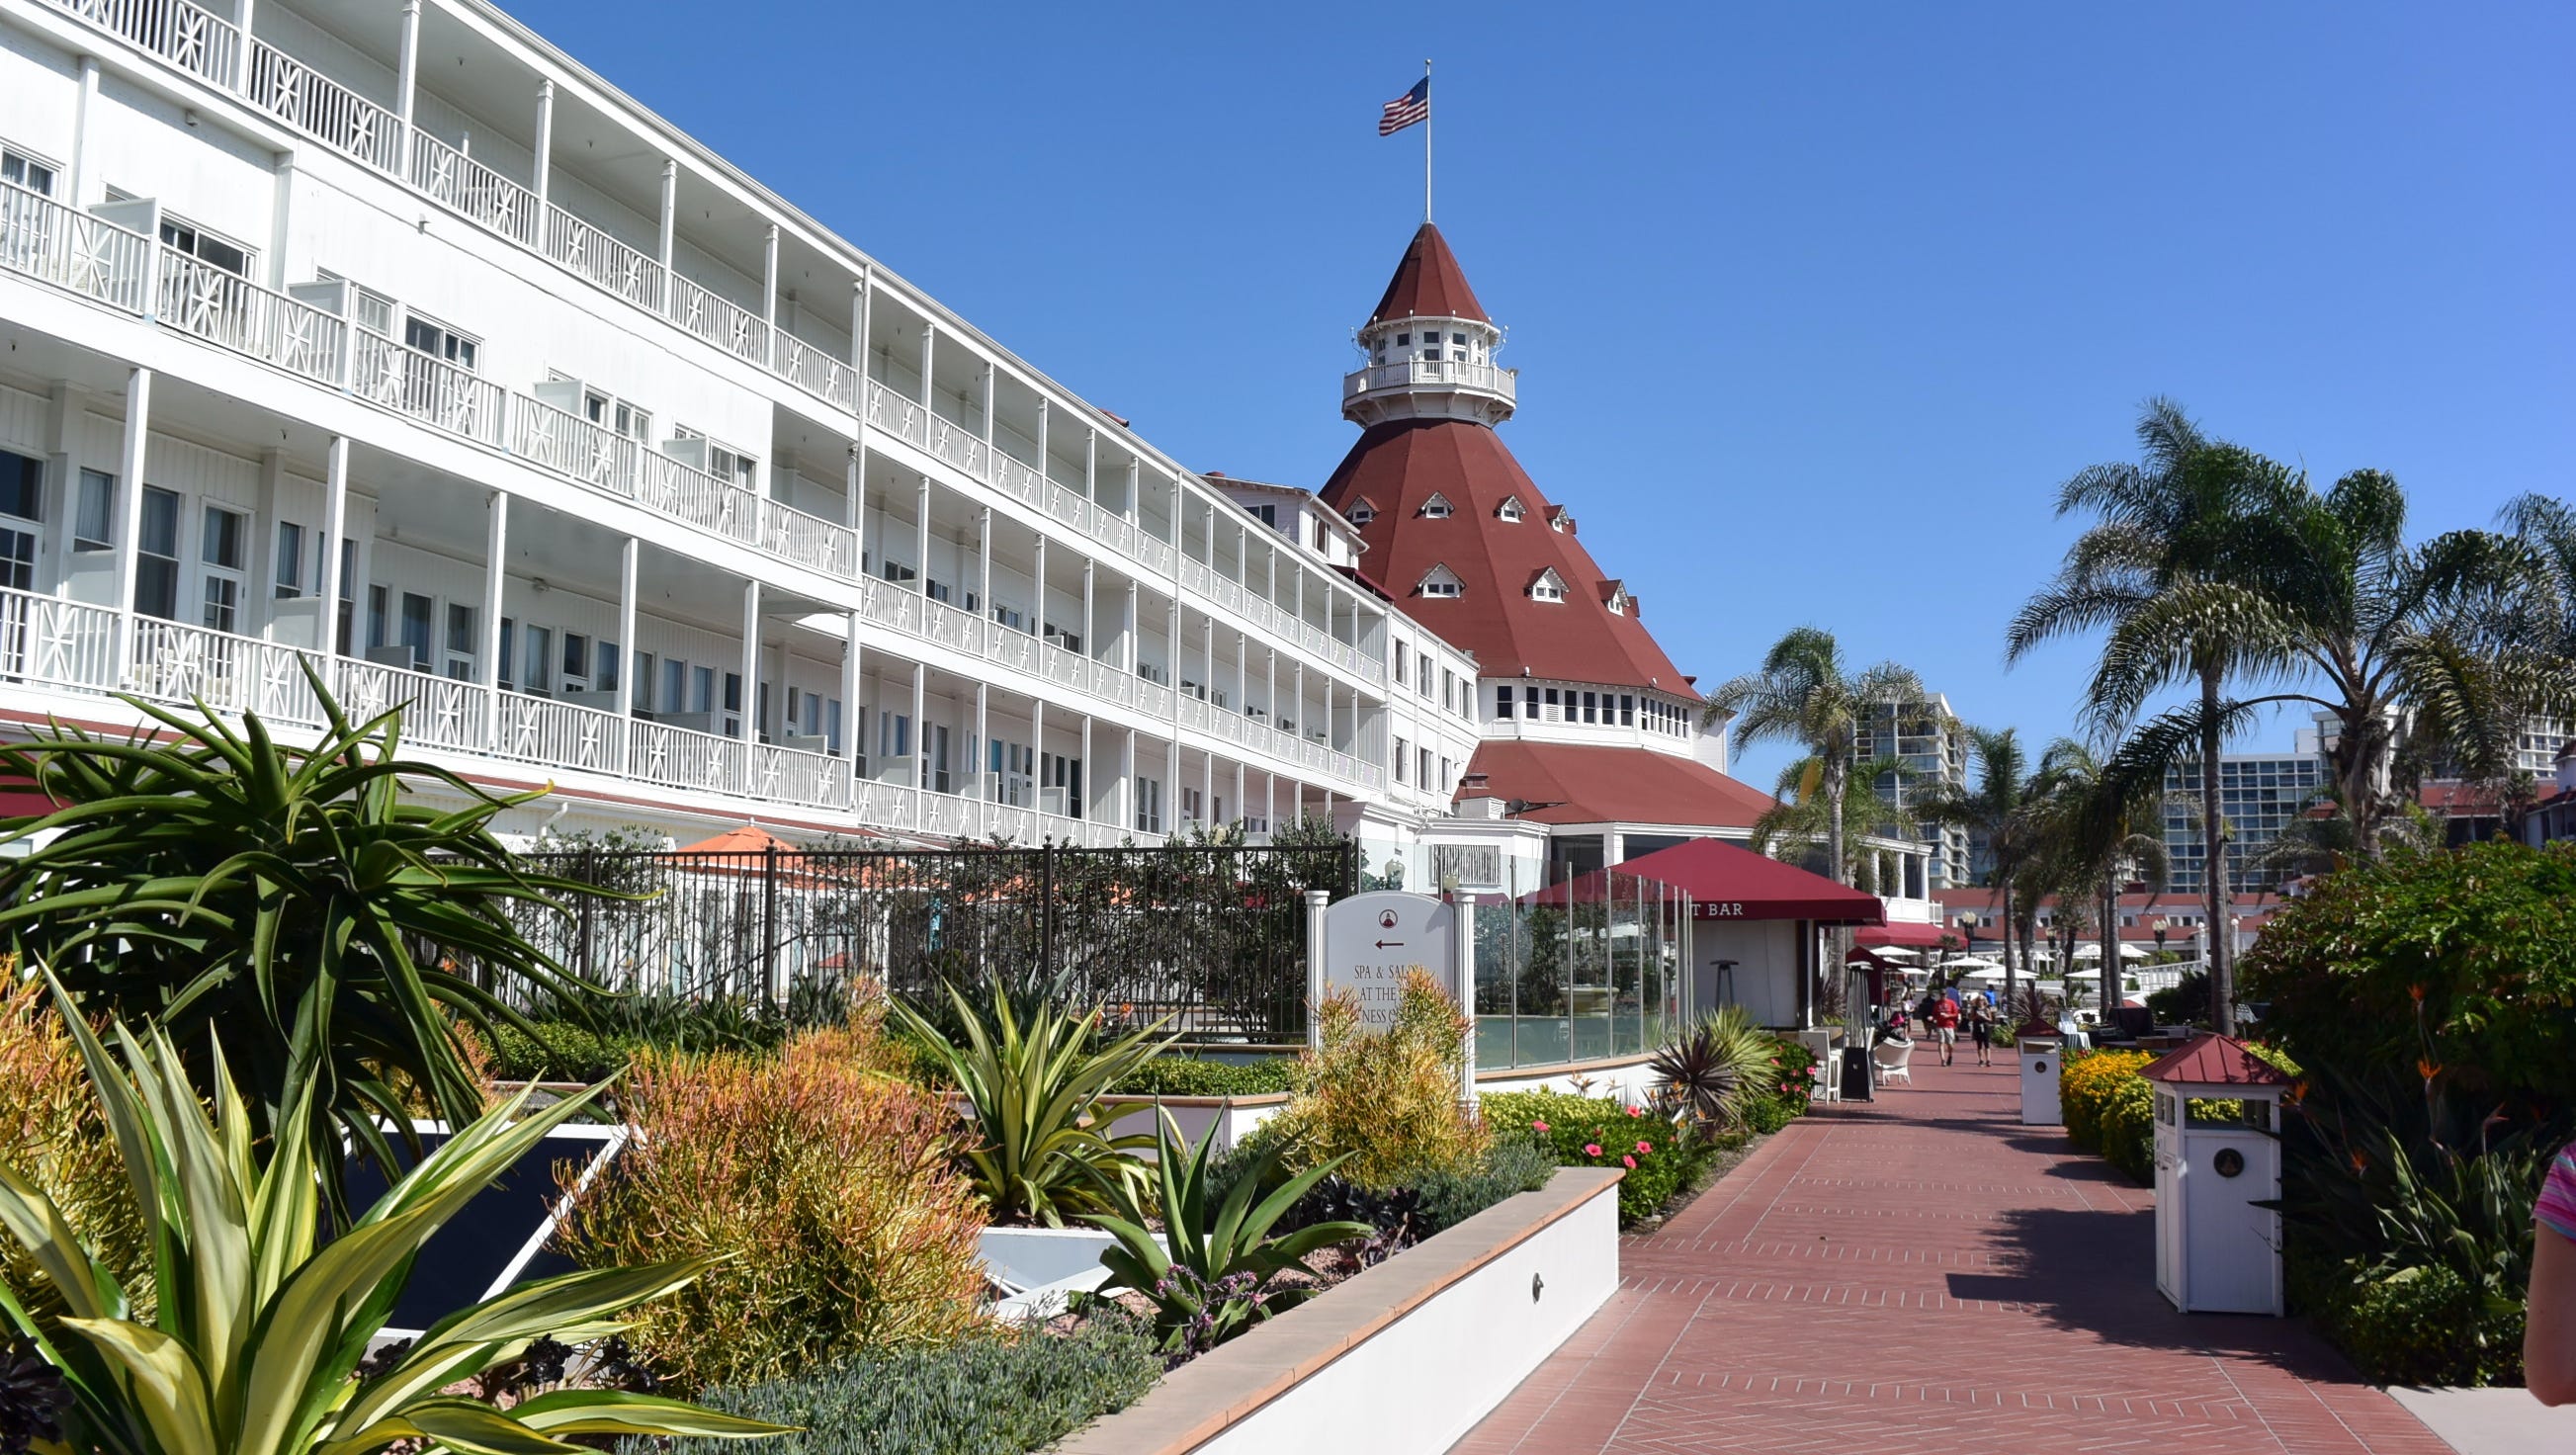 Hotel del Coronado | , USA | Sights - Lonely Planet